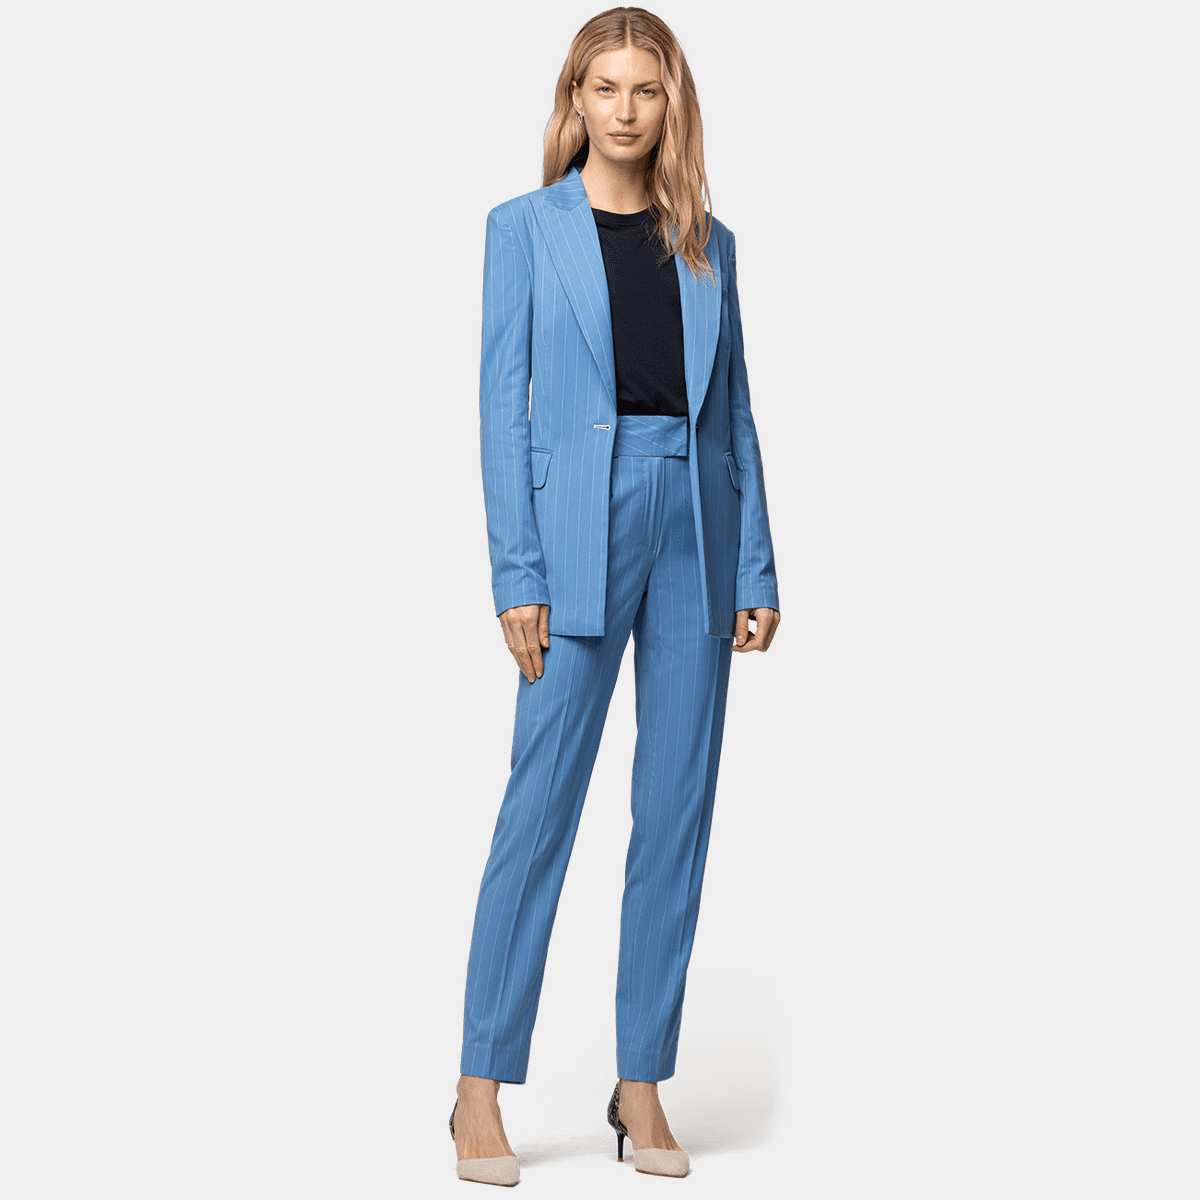 Women's Blue Suits